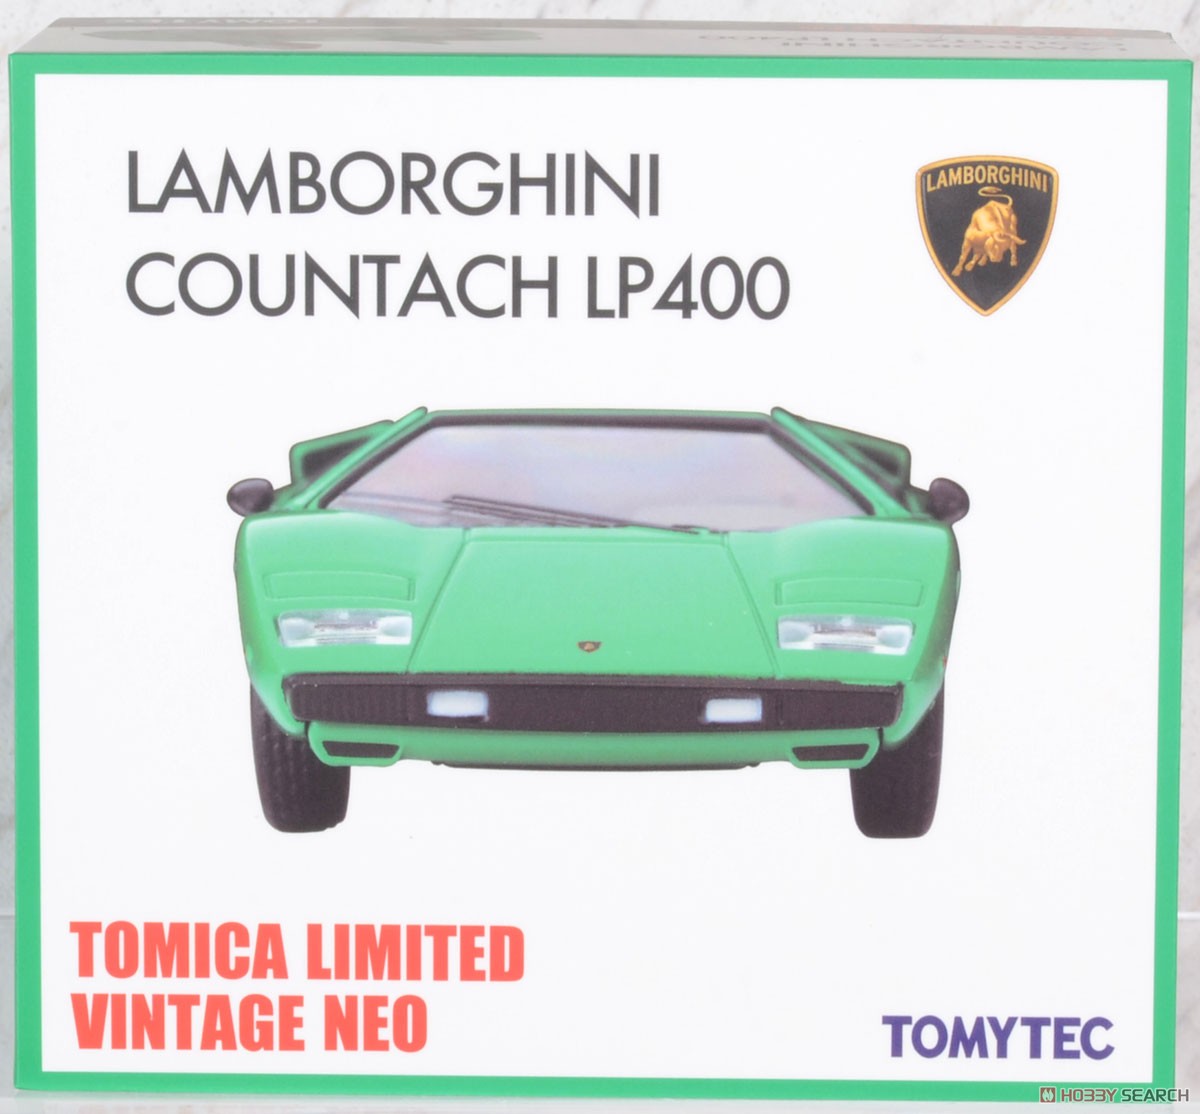 TLV-N ランボルギーニ カウンタック LP400 (緑) (ミニカー) パッケージ1